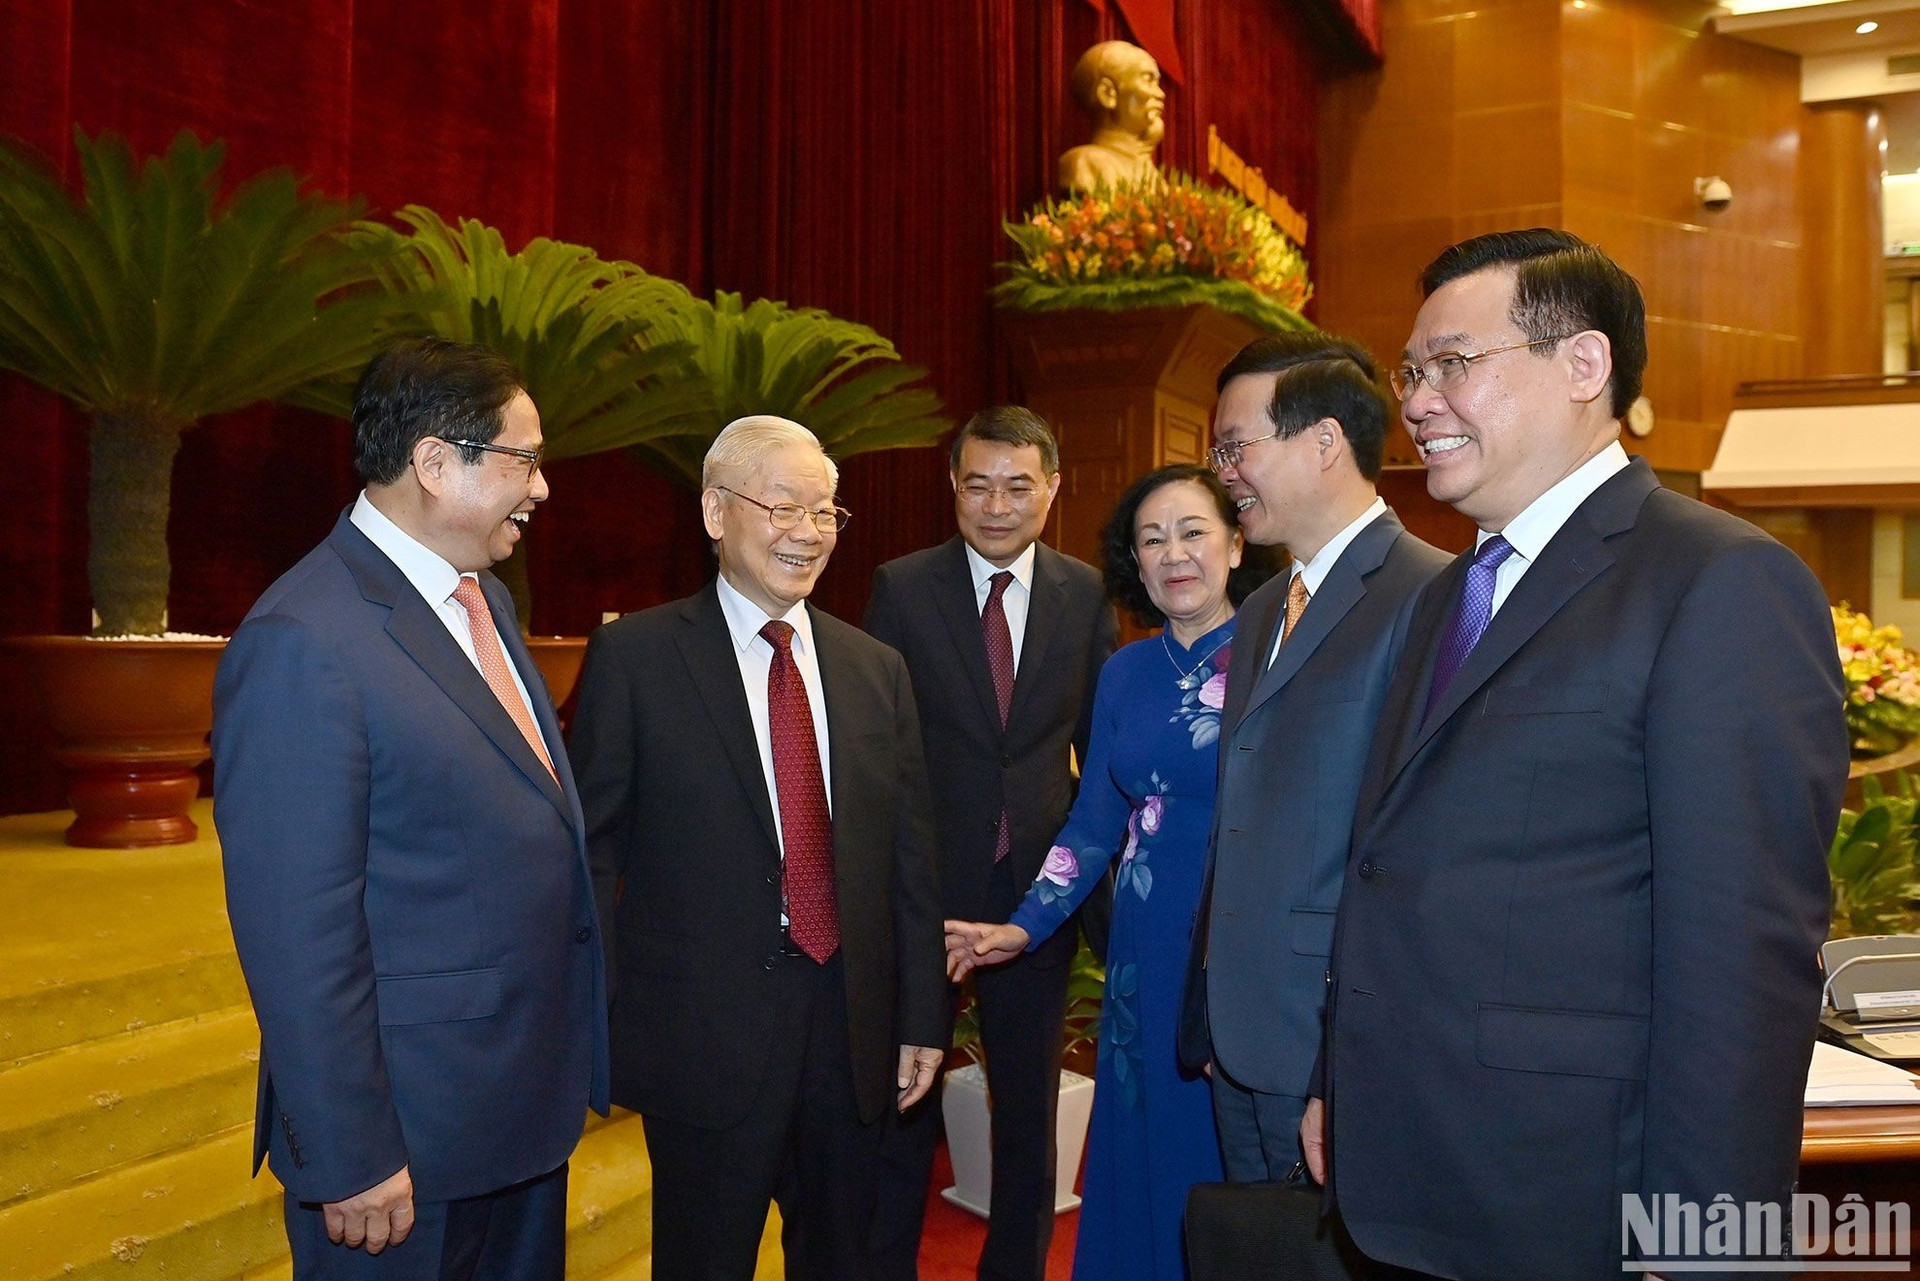 Tổng Bí thư Nguyễn Phú Trọng và các đồng chí lãnh đạo Đảng, Nhà nước cùng các đại biểu dự phiên bế mạc hội nghị.